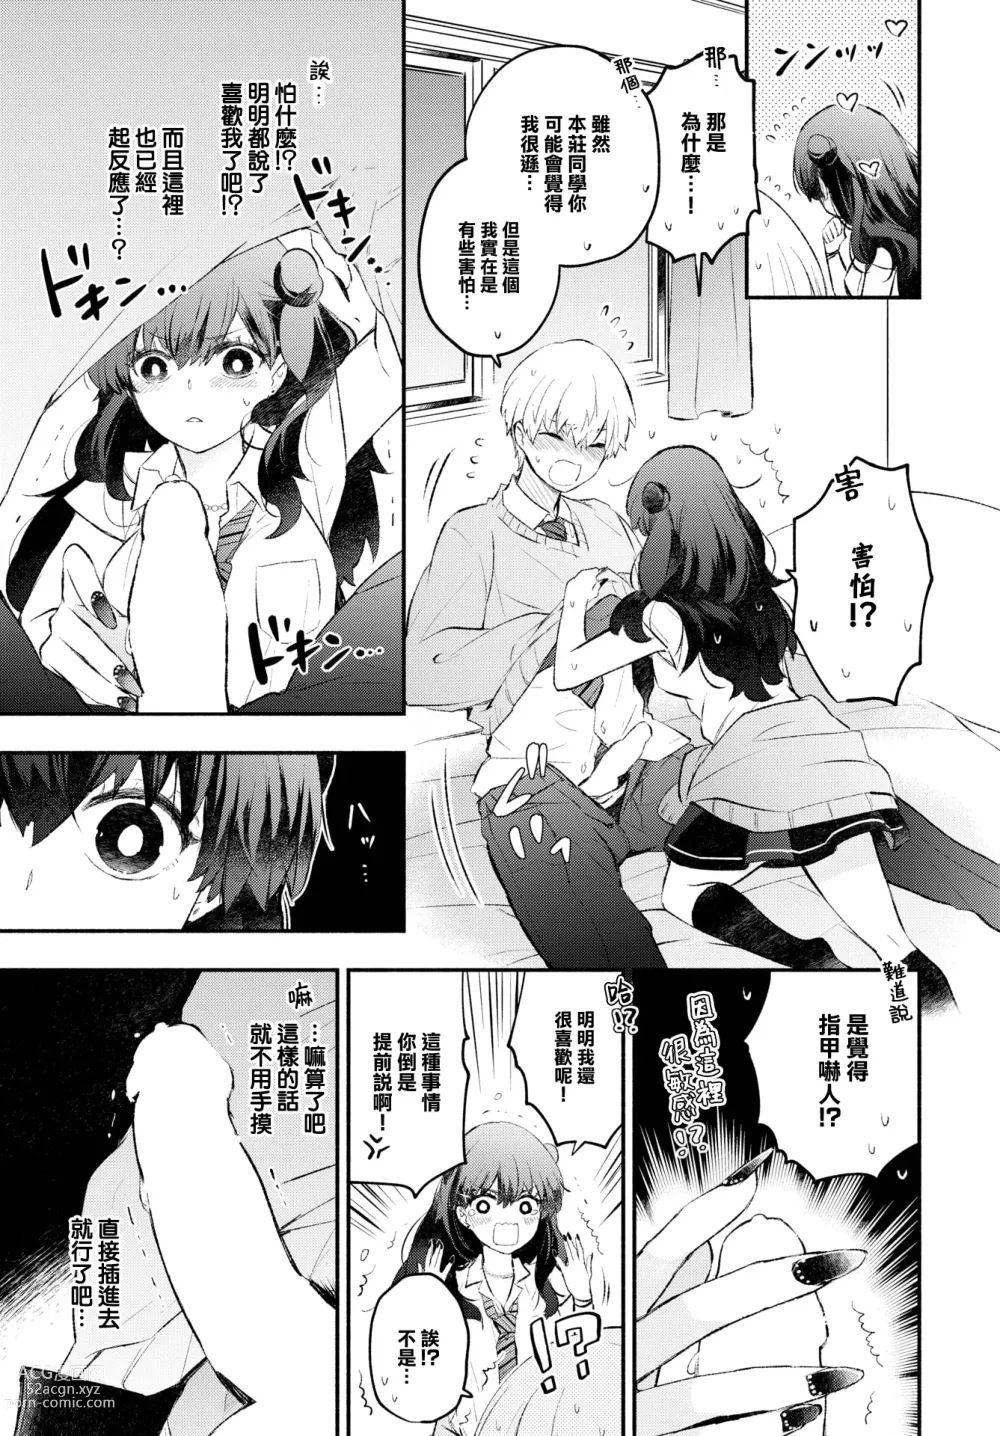 Page 8 of manga Usotsuki Kanojo